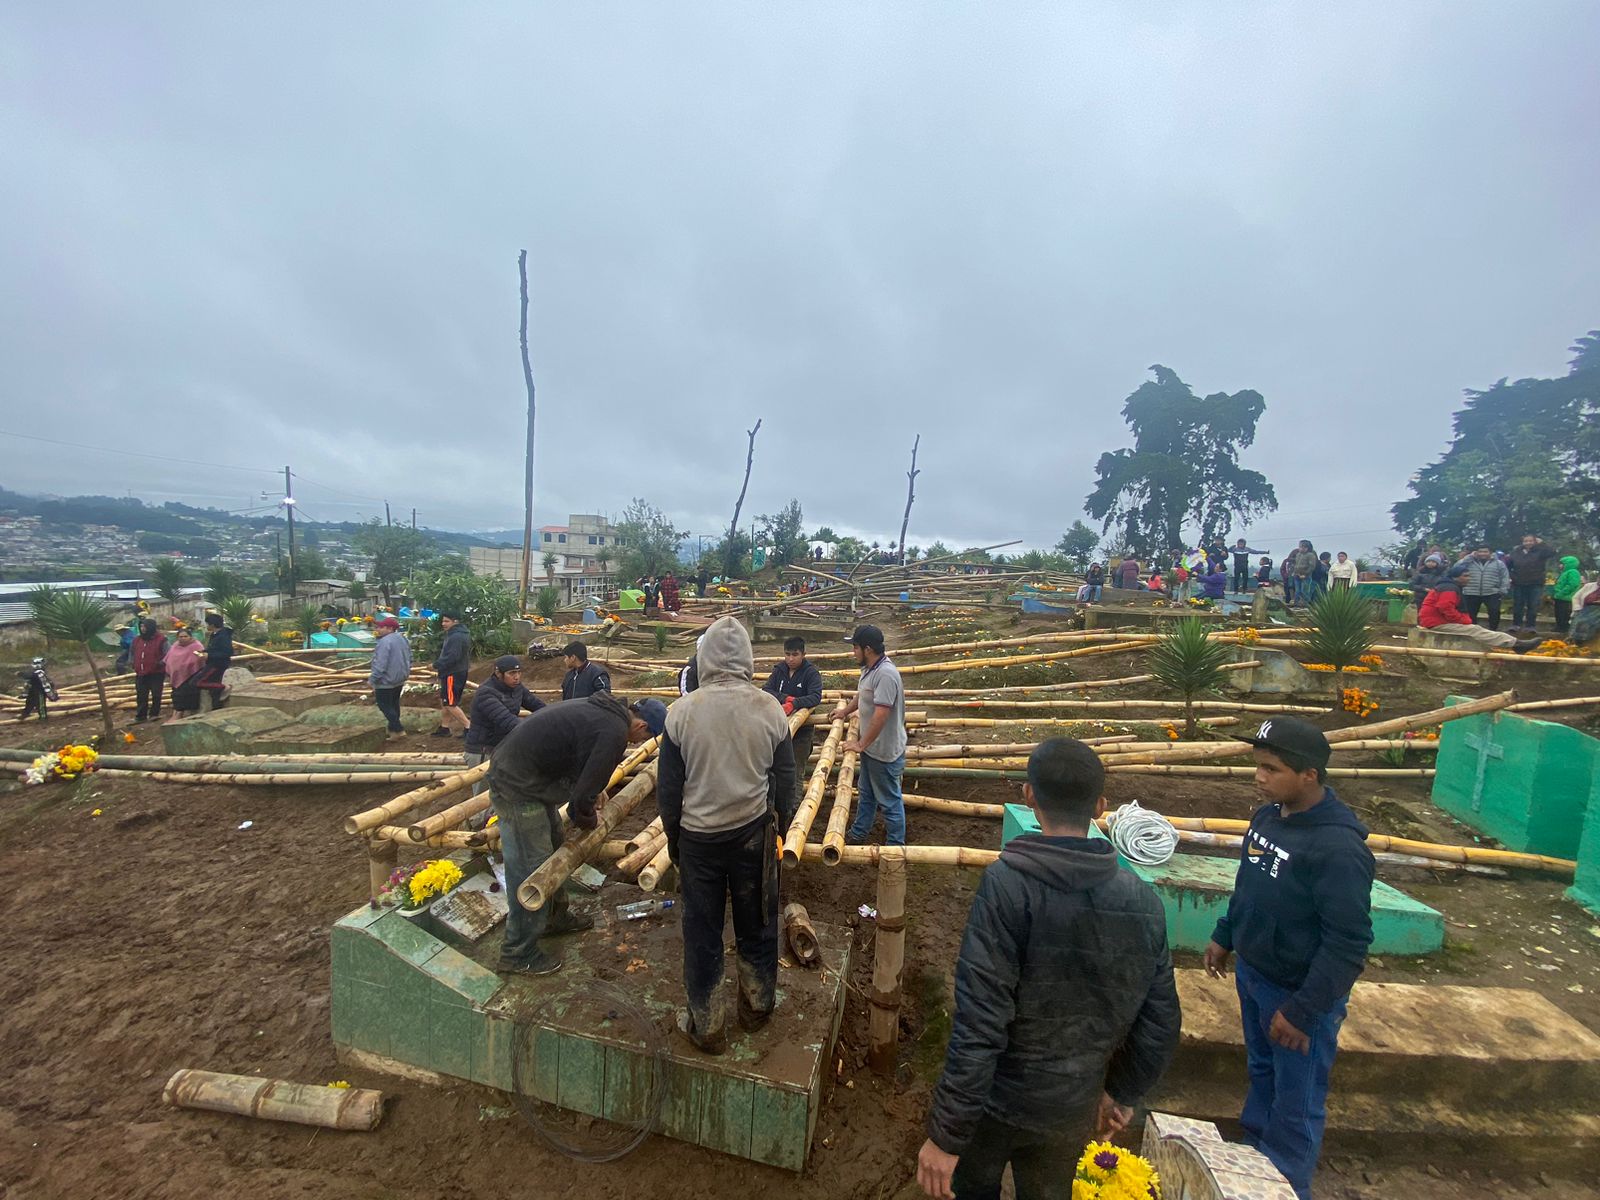 El festival de barriletes gigantes de Santiago Sacatepéquez es suspendido por la situación climática en el país.  (Foto Prensa Libre: E. Sánchez)